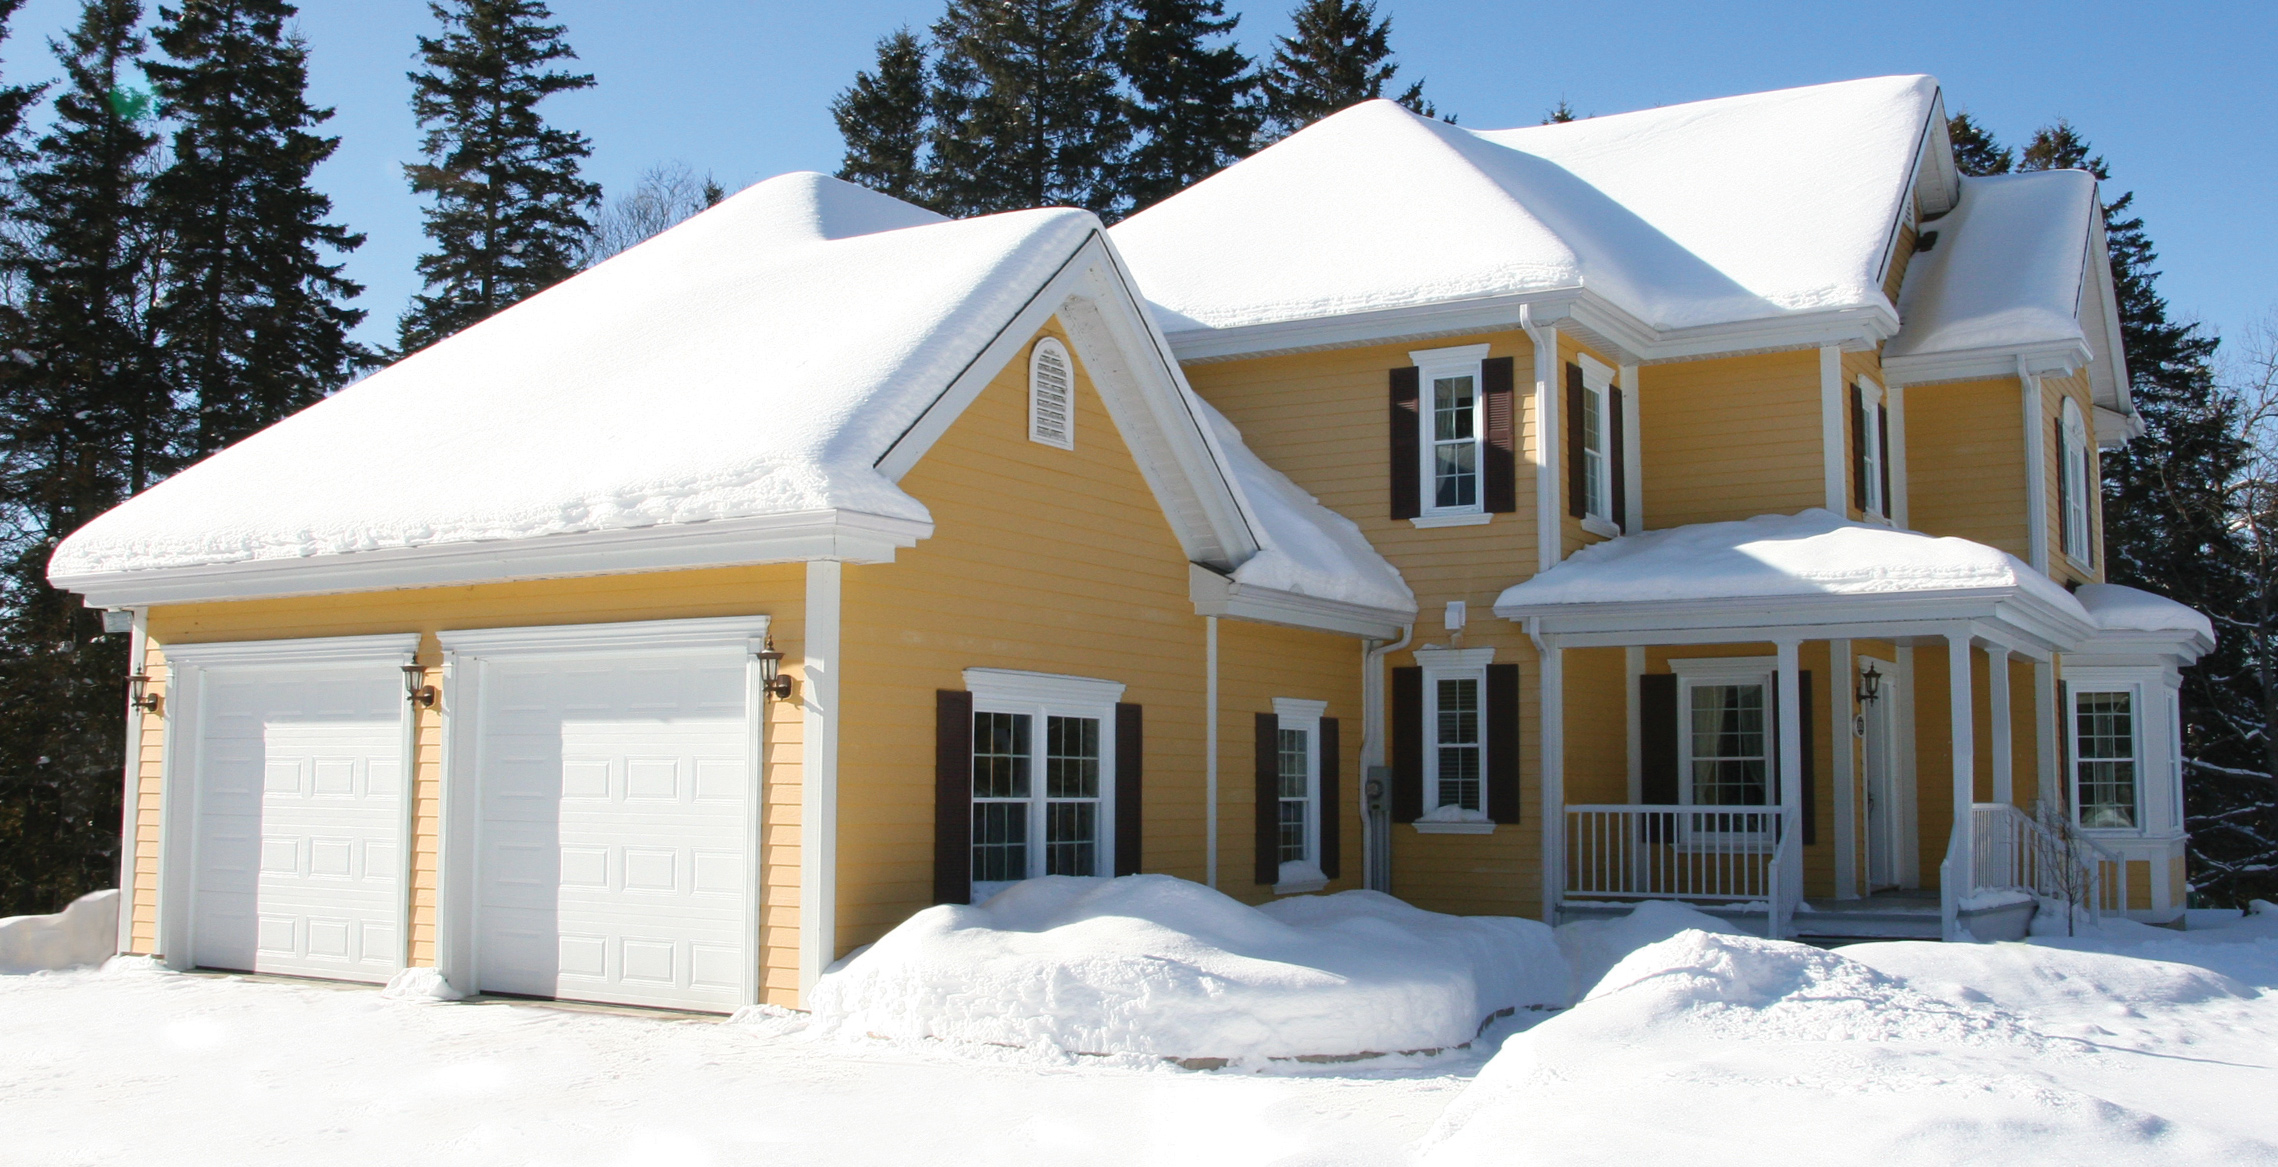 Maison jaune de style traditionnel en hiver, incluant un garage double avec portes de garage Standard+ Classique CC Blanc glacier de grandeur 9' x 7'.